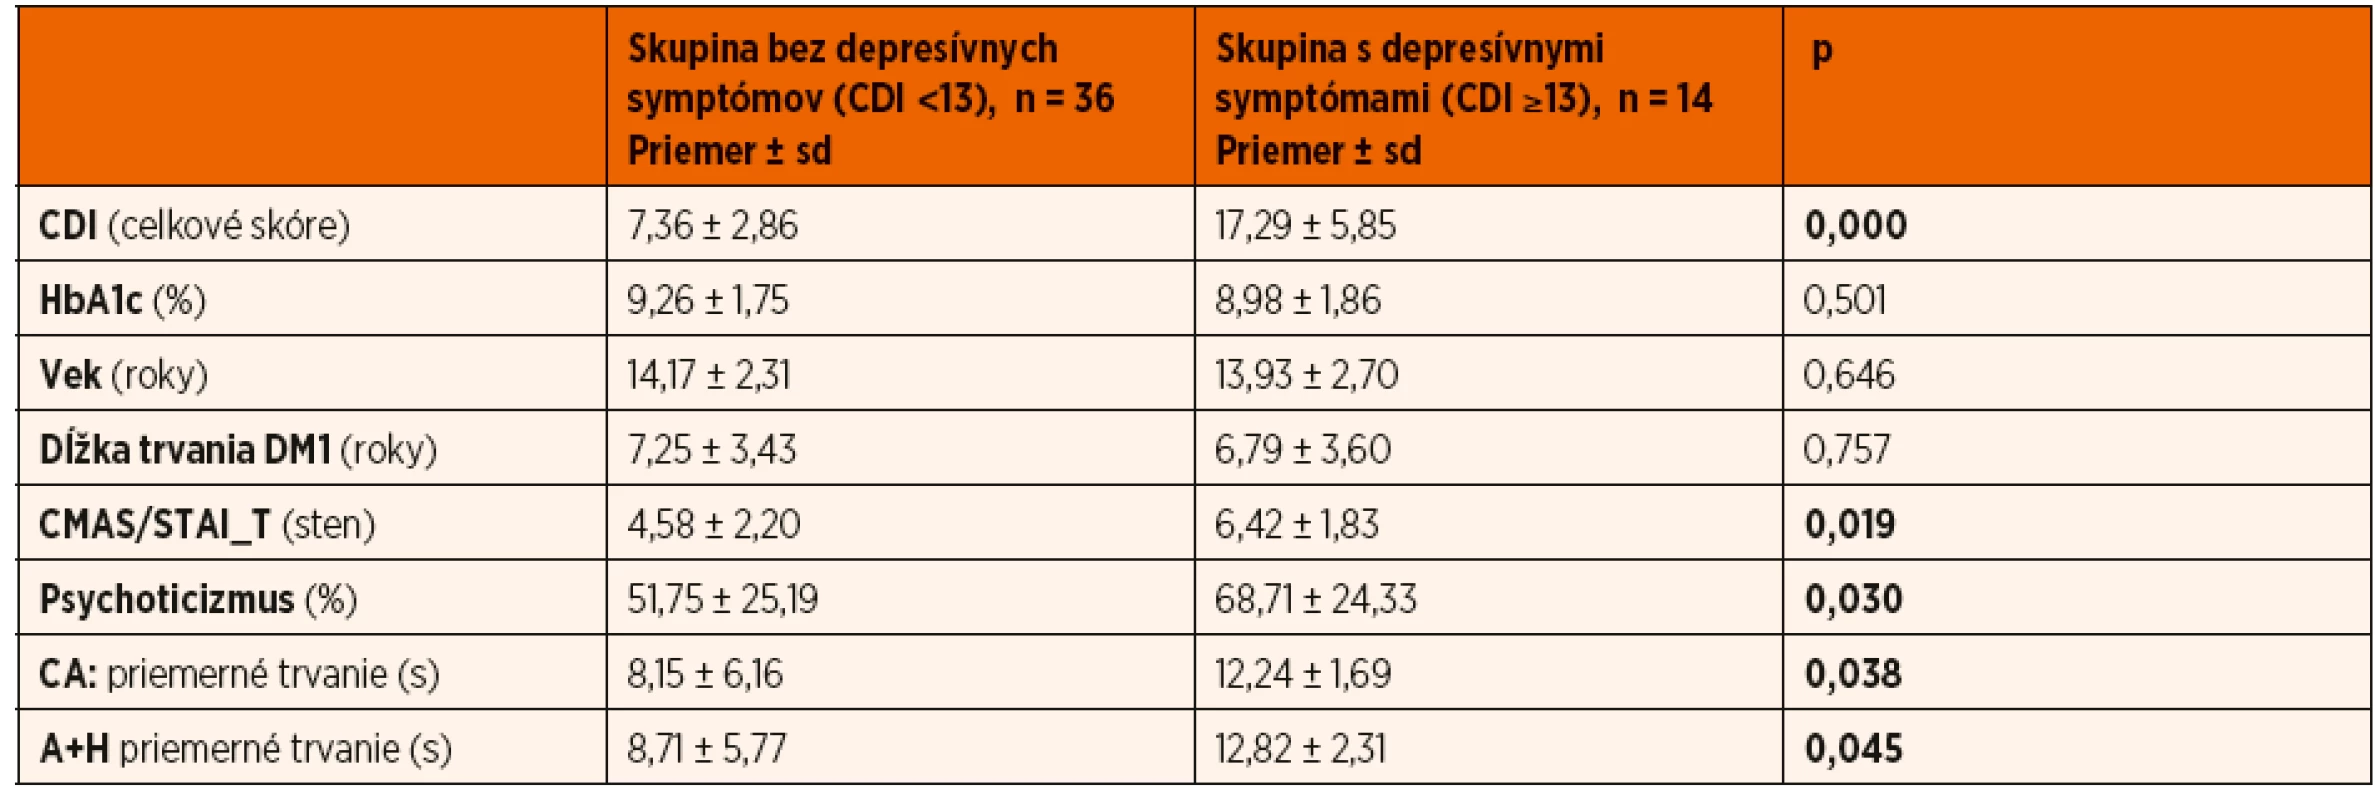 Signifikantné rozdiely medzi skupinami podľa prítomnosti depresívnych symptómov (Mannov-Whitneyov U test); p <0,05.